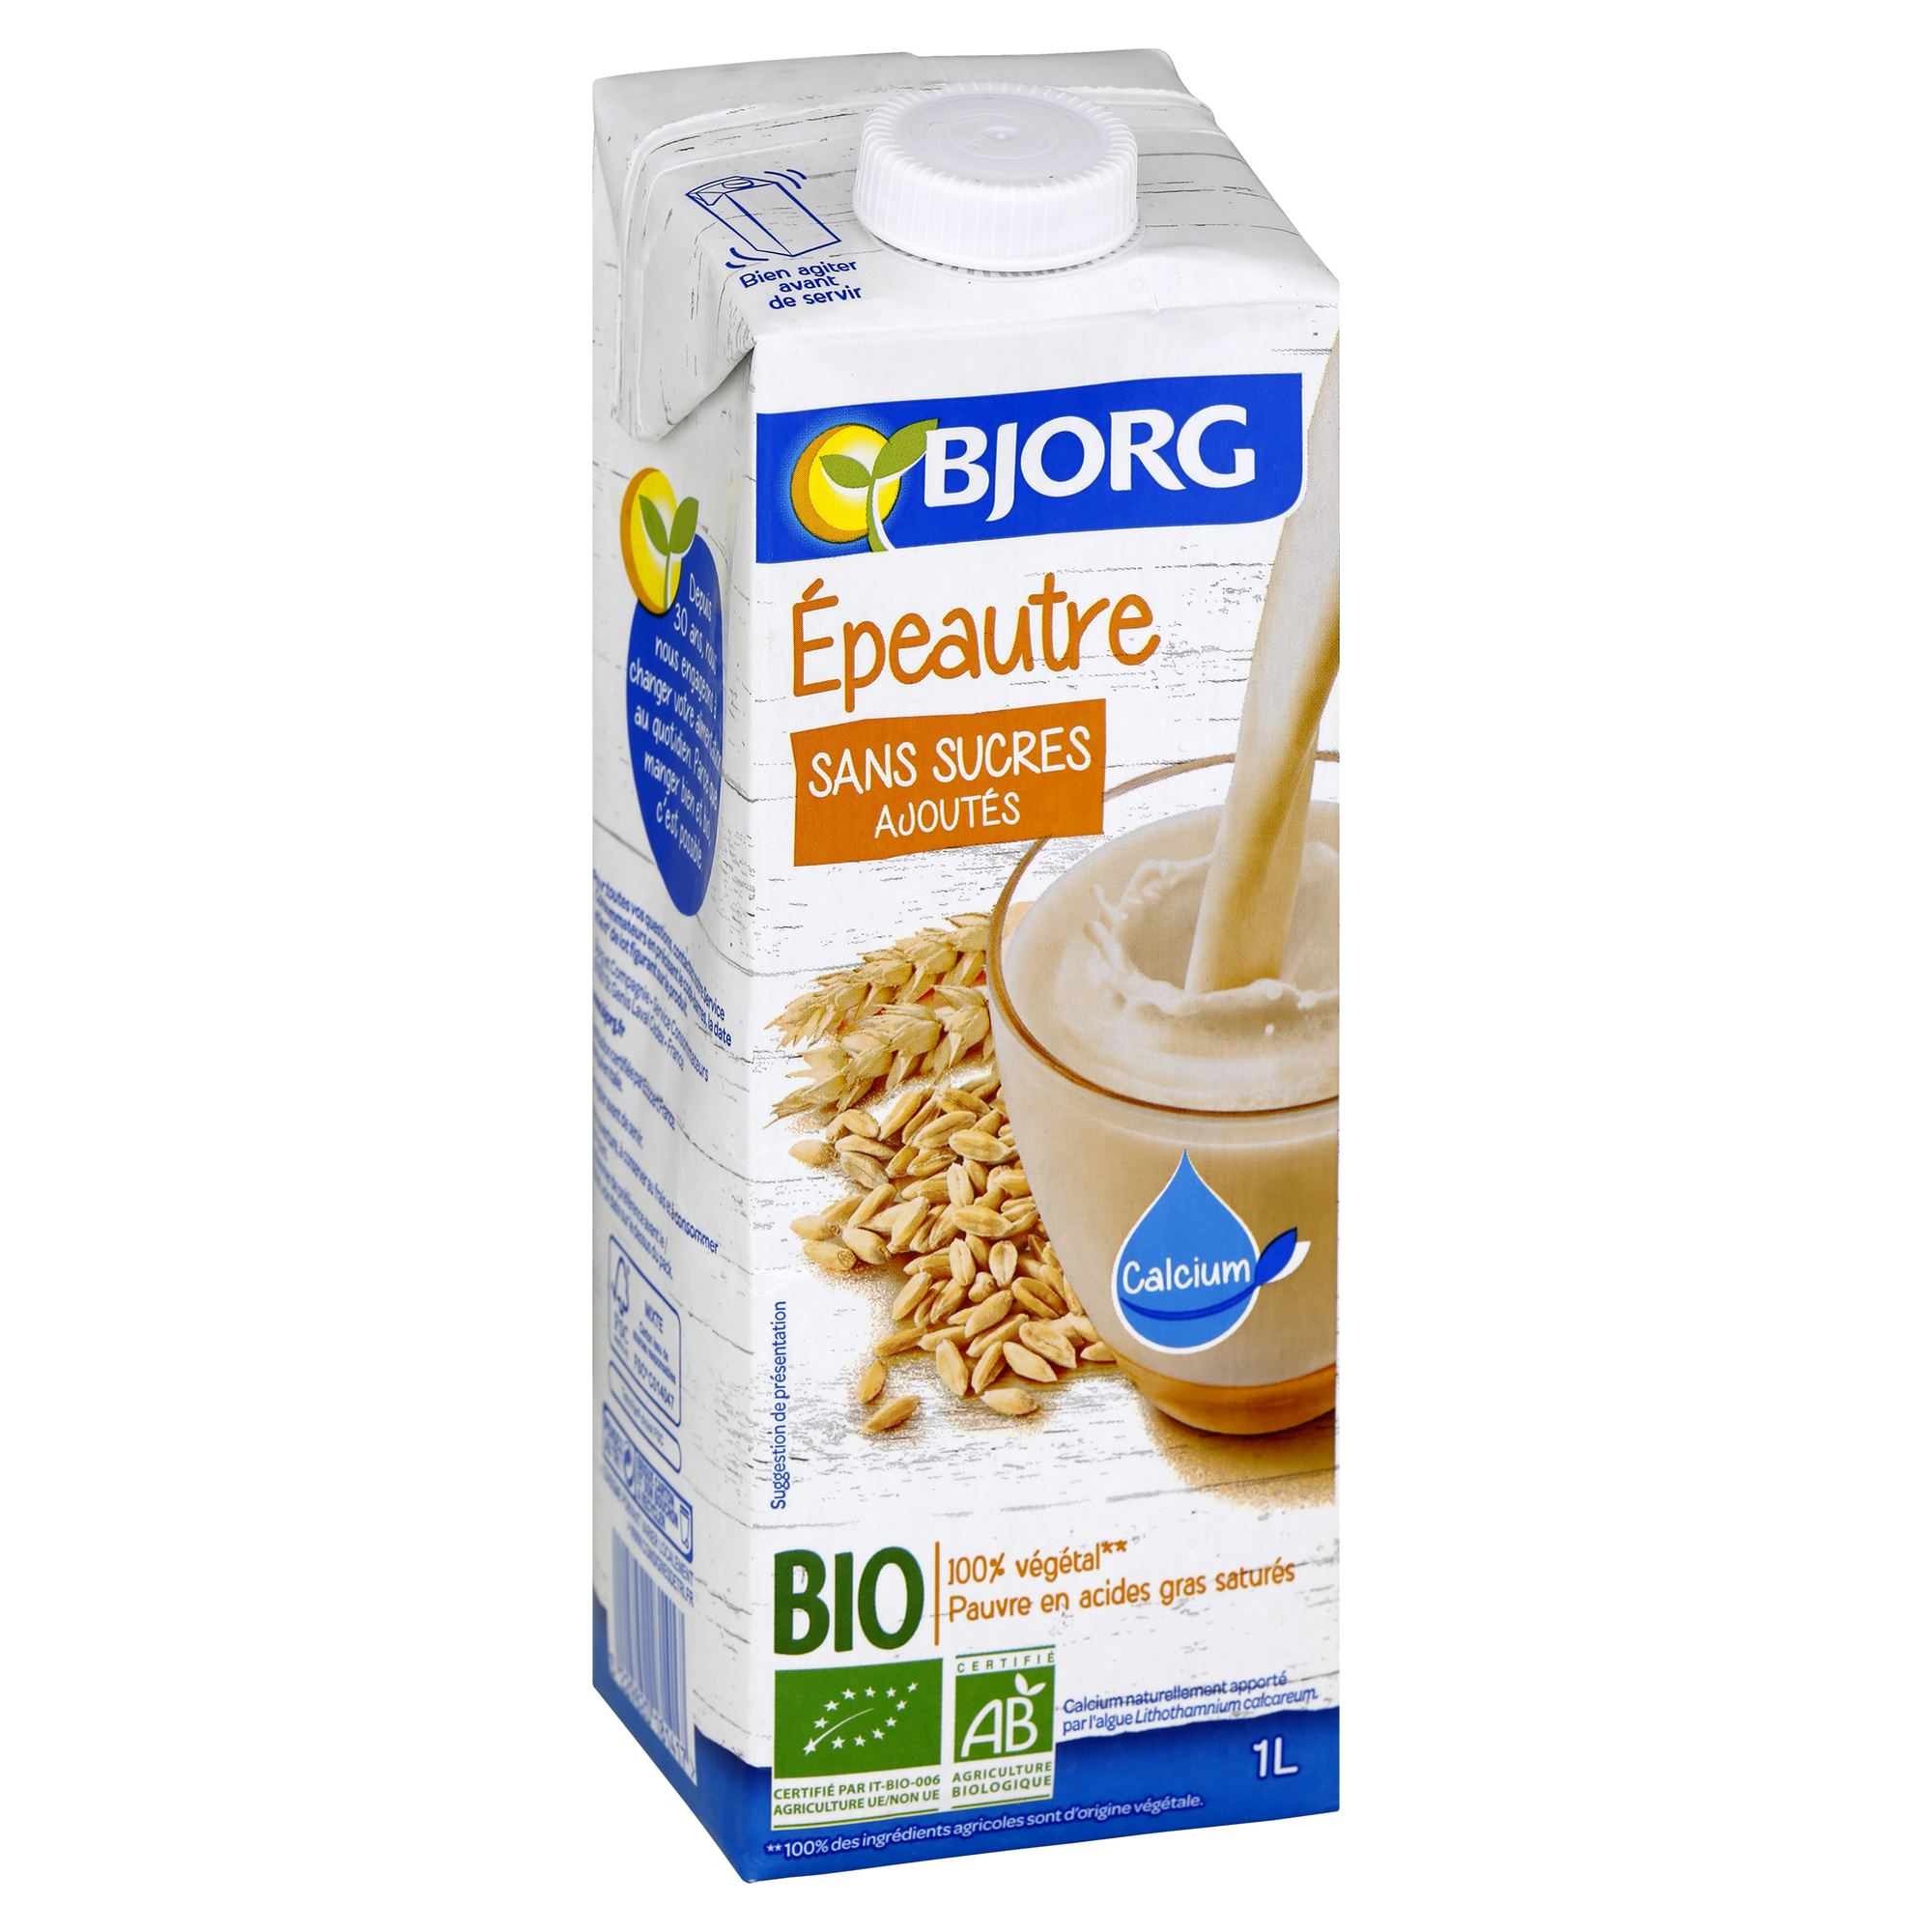 Bjorg Organic Spelt Milk (1L)